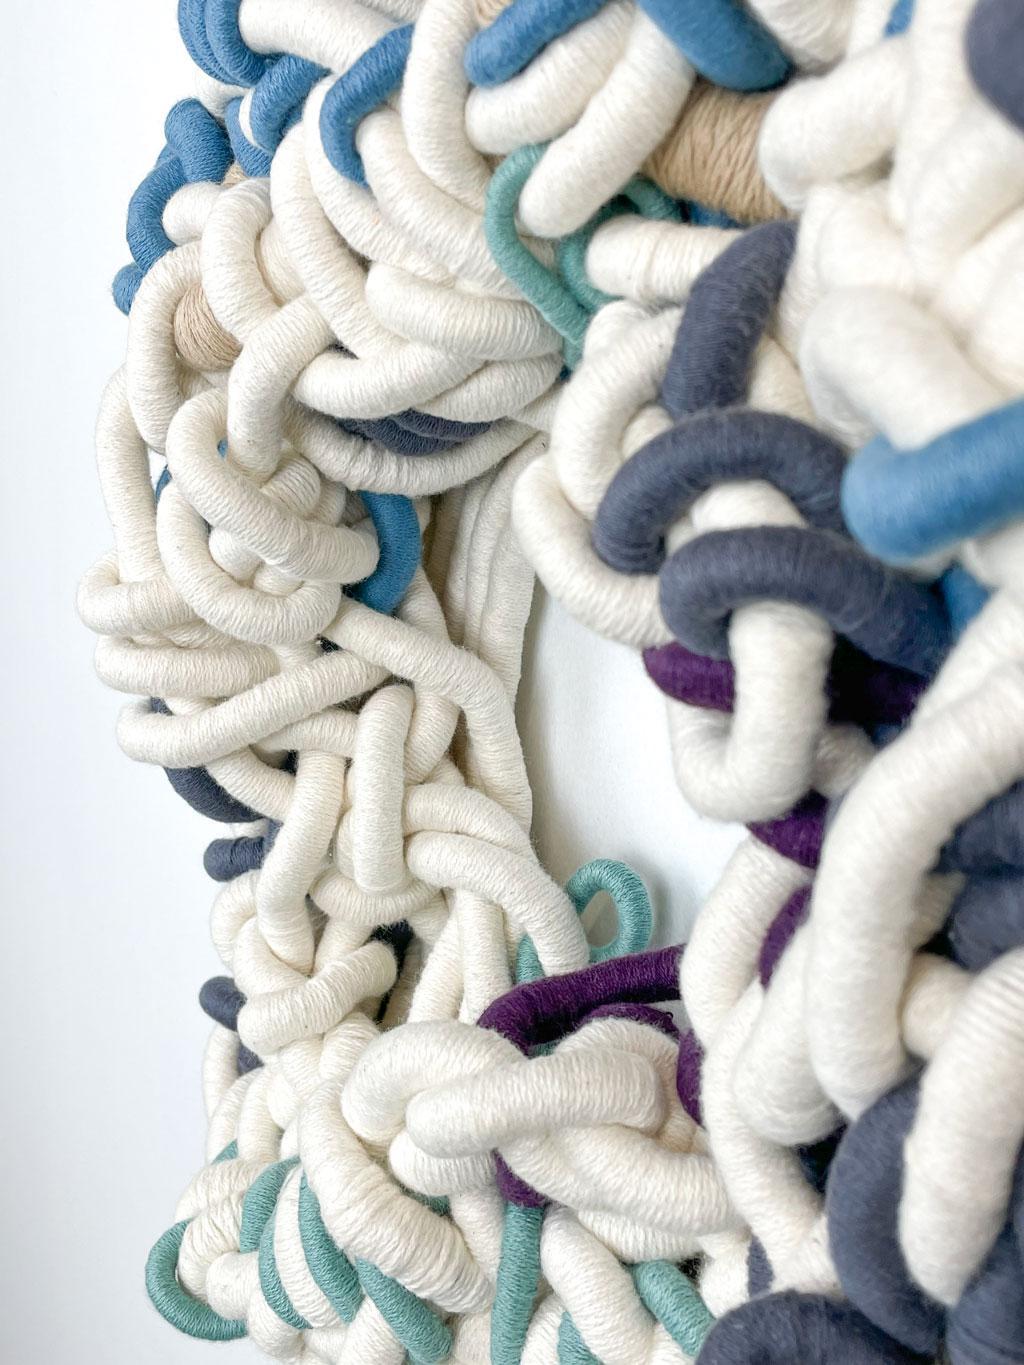 'Reaching limbs below' handcoiled, cotton, fiber, textile, contemporary art - Sculpture by Renata Daina